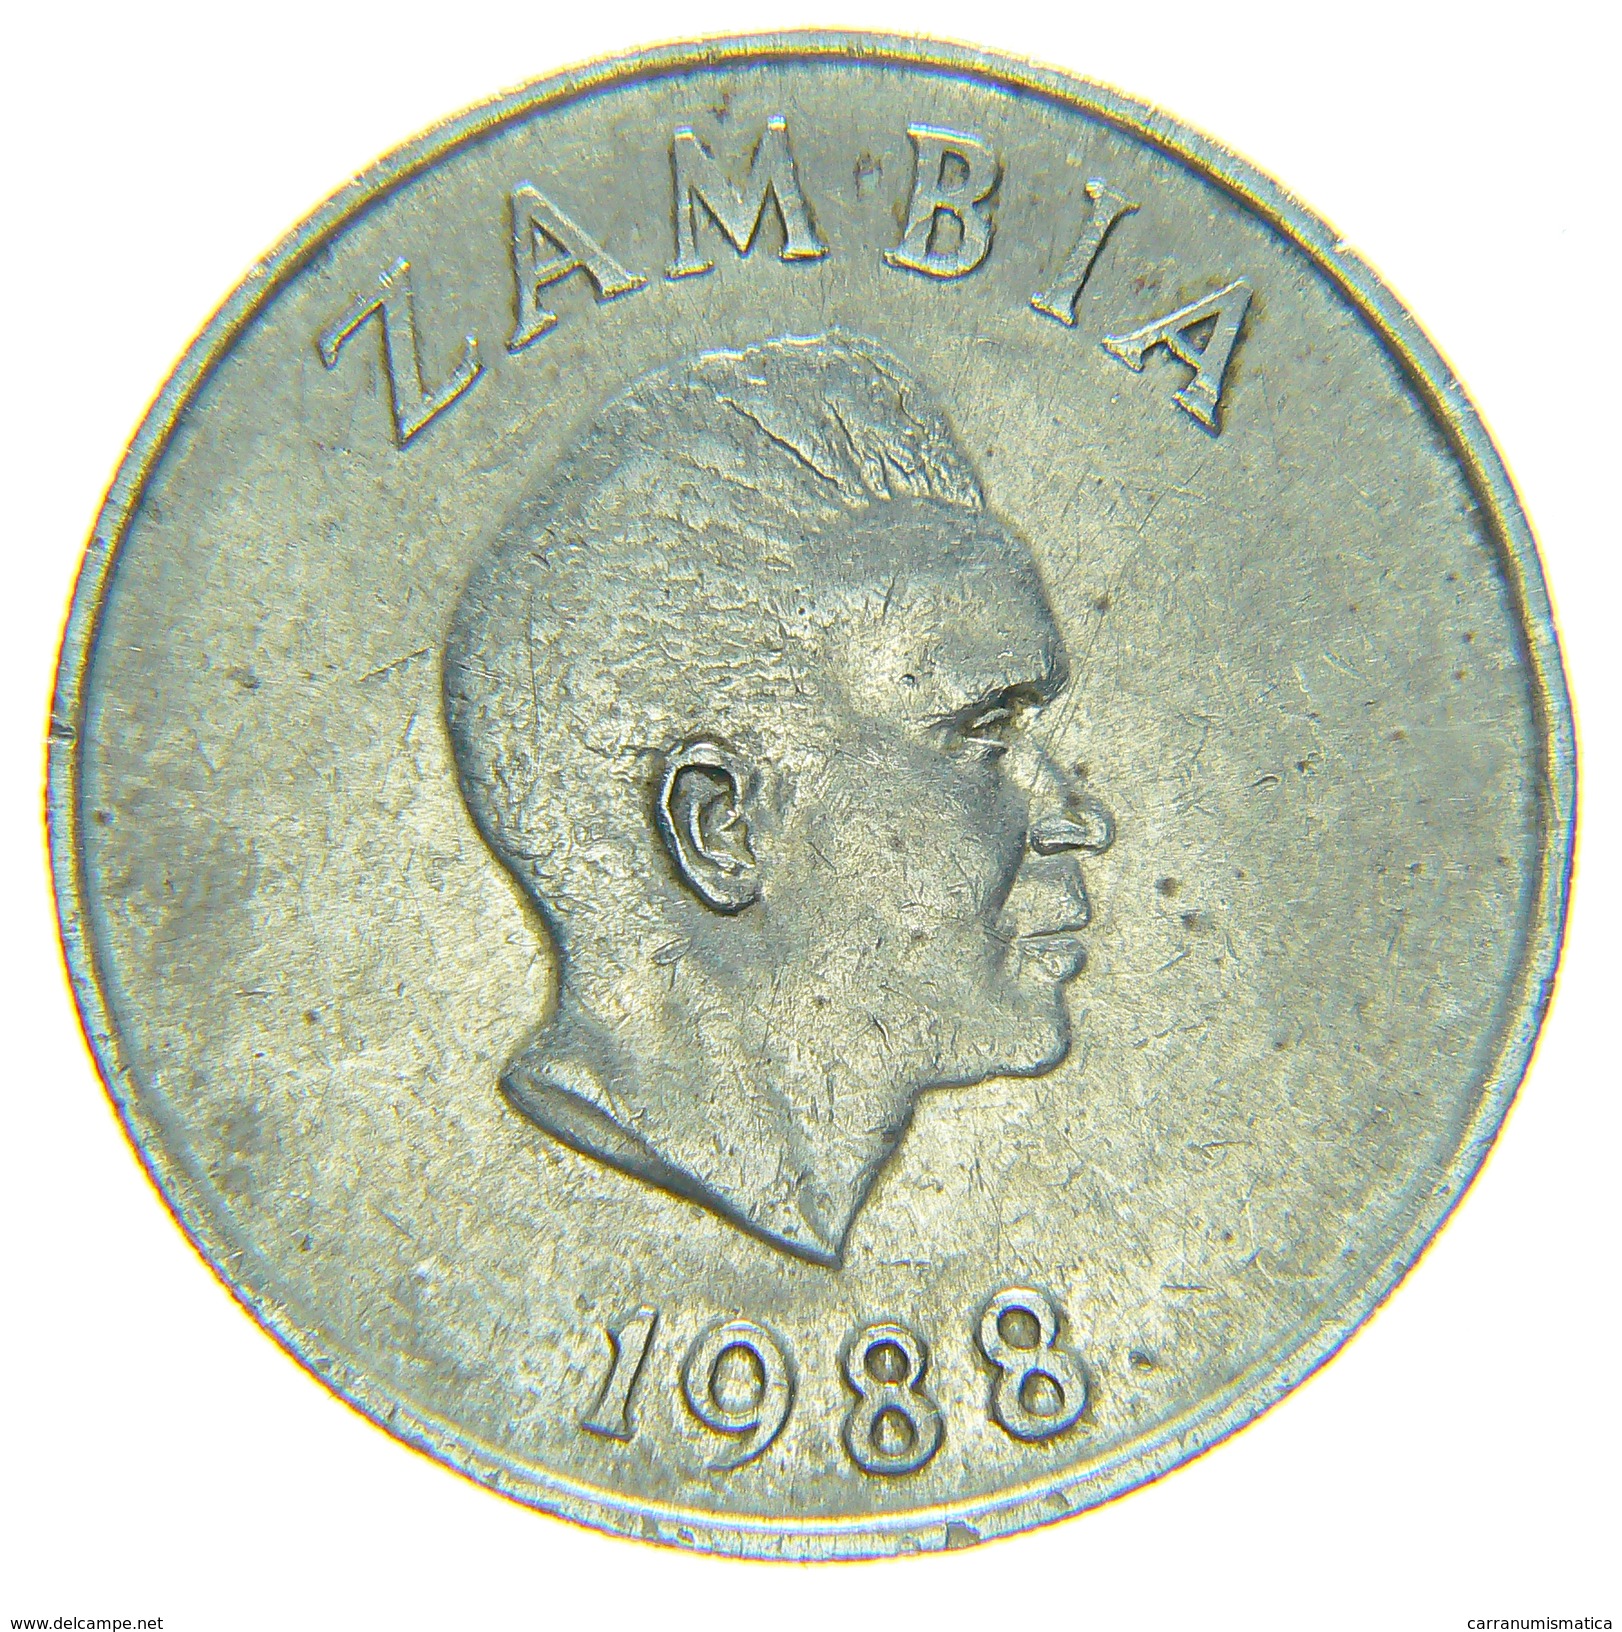 [NC] ZAMBIA - 20 NGWEE 1988 - Zambie